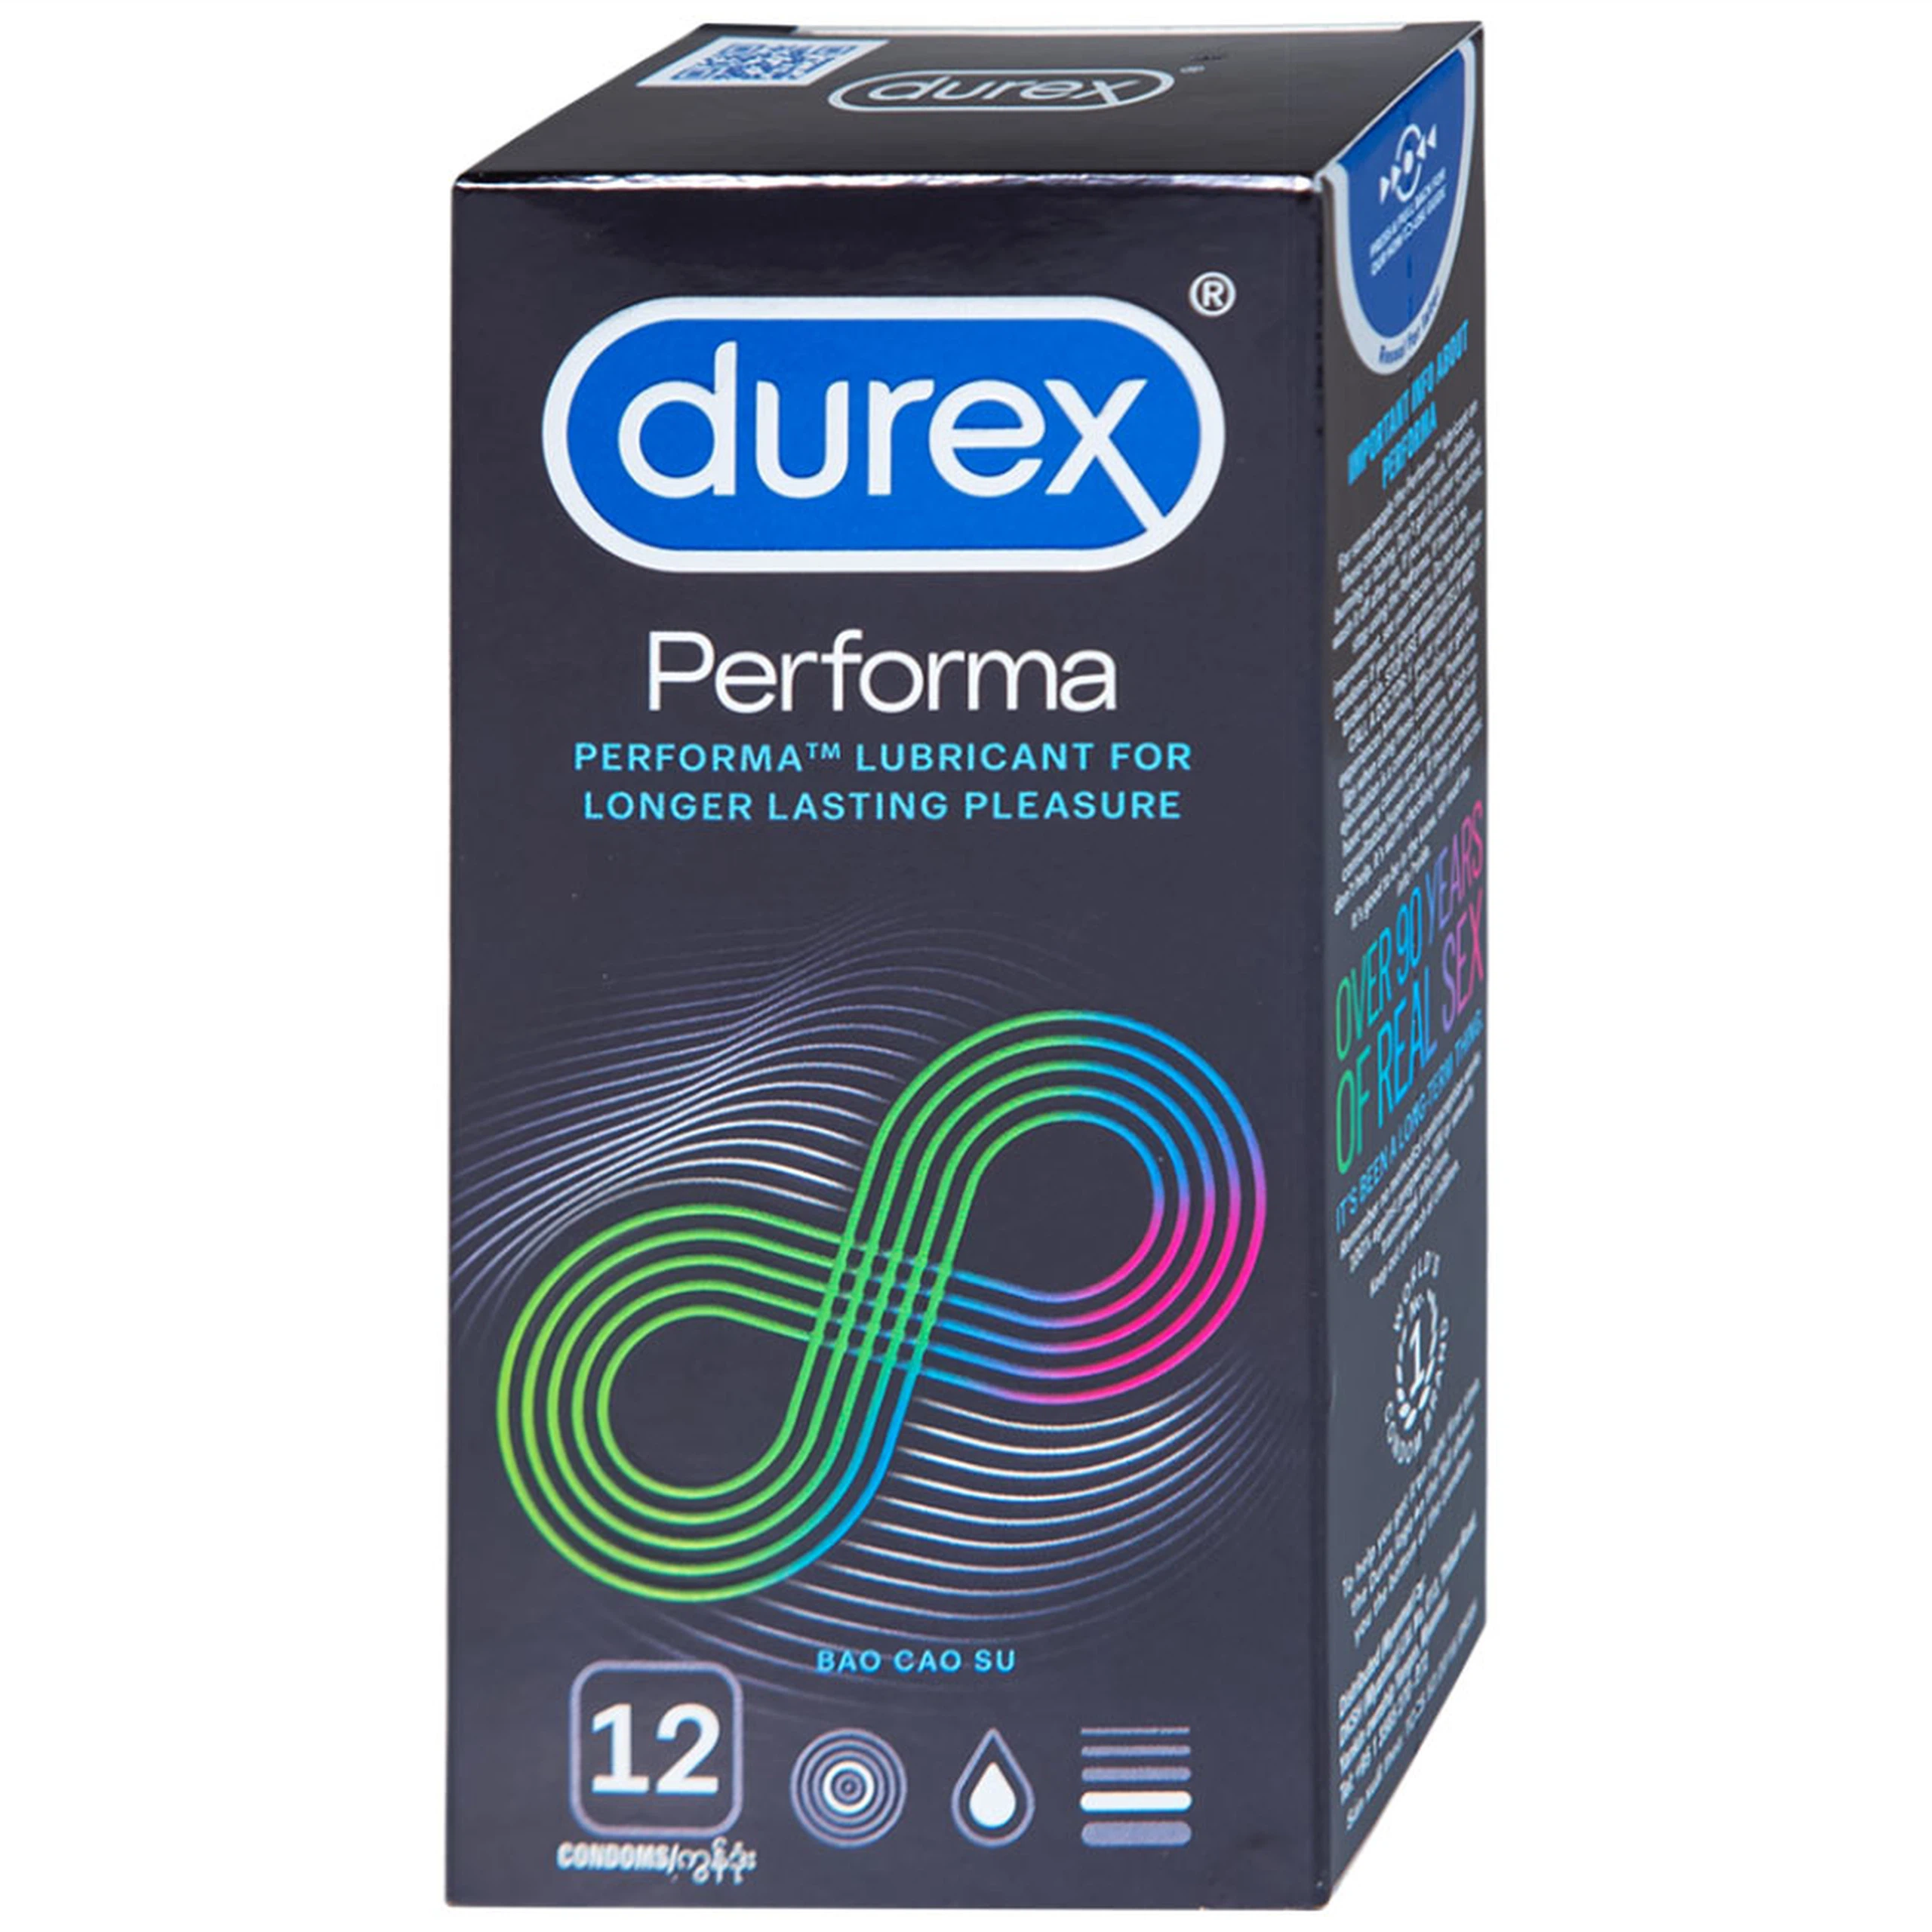 Bao cao su Durex Performa có gel bôi trơn, kéo thời điểm cực khoái trong lúc quan hệ (12 cái)